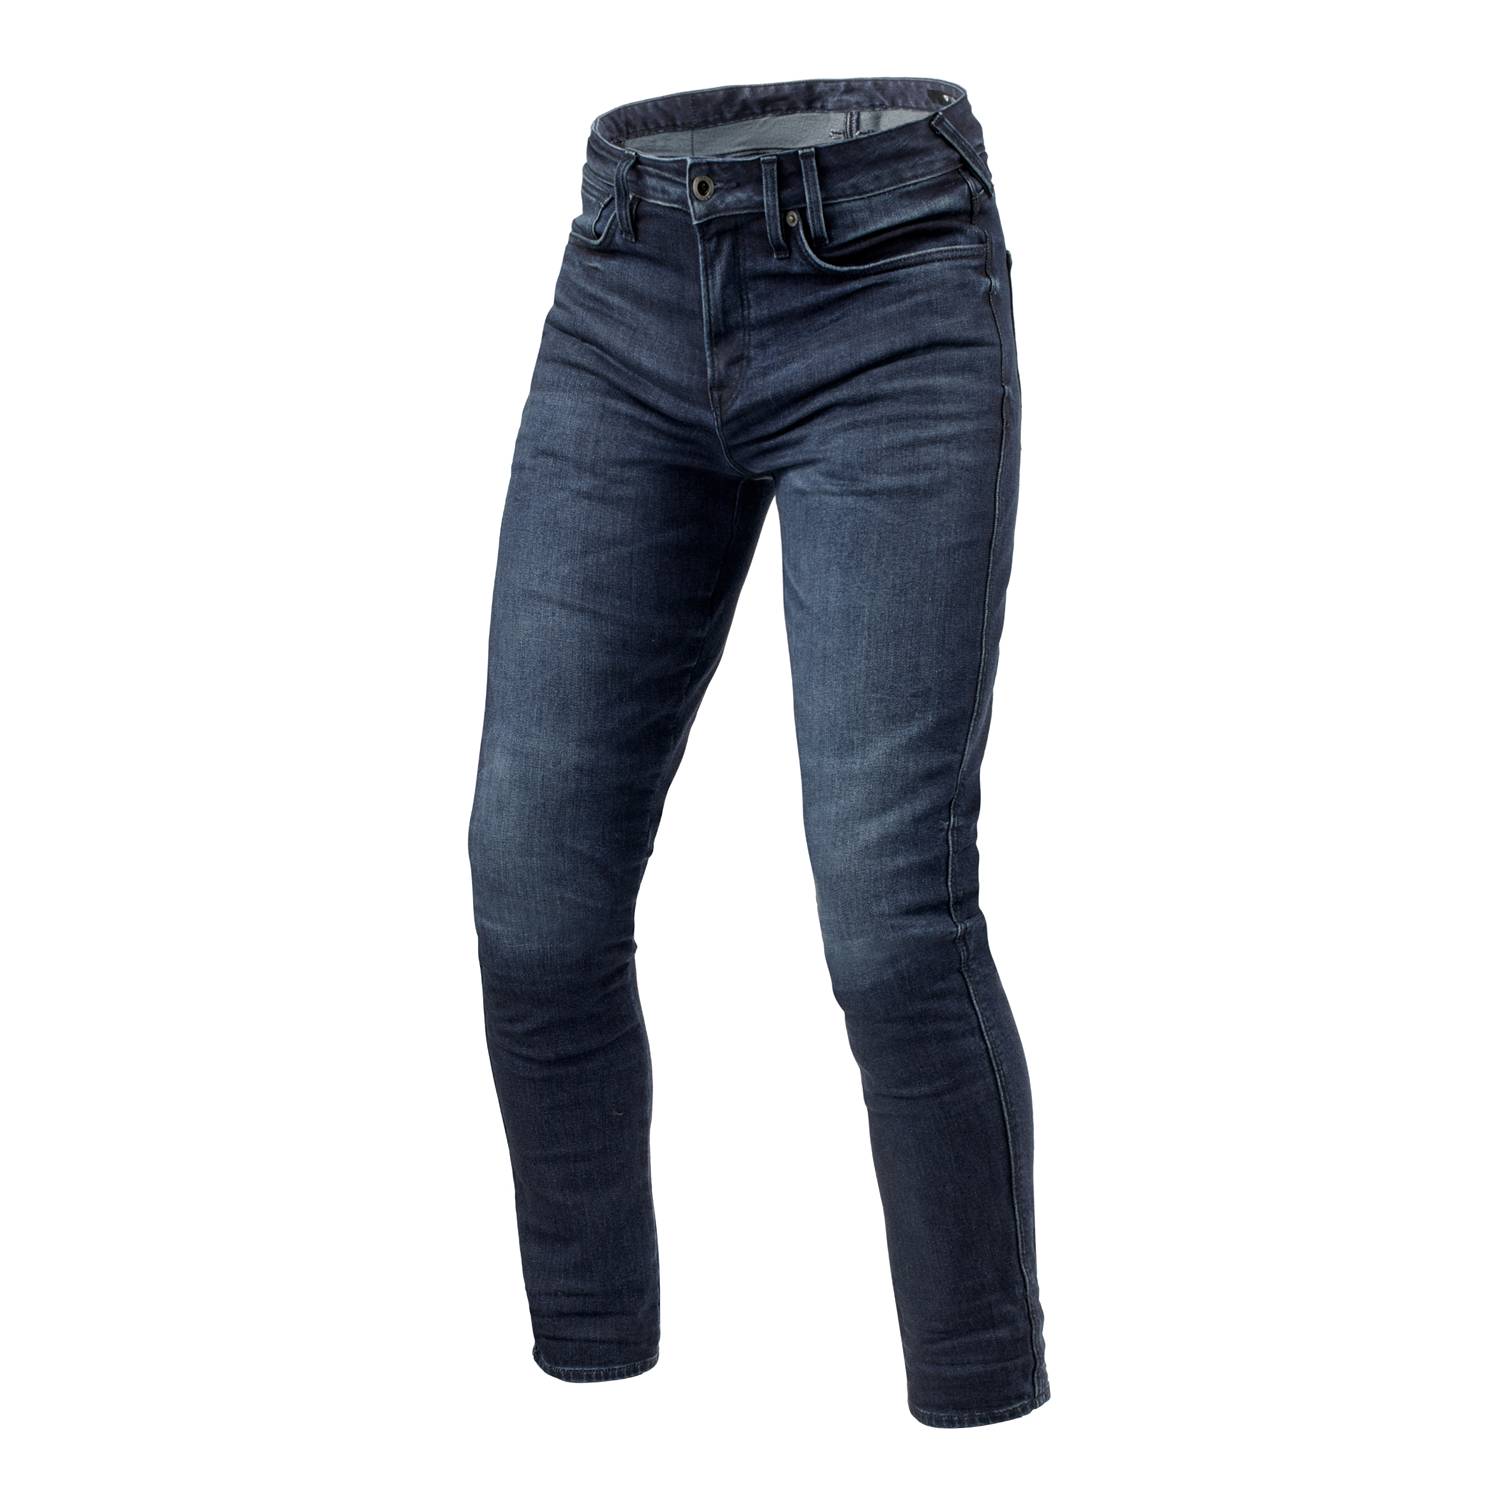 Image of REV'IT! Jeans Carlin SK Dark Blue Used L32 Motorcycle Jeans Size L32/W30 EN